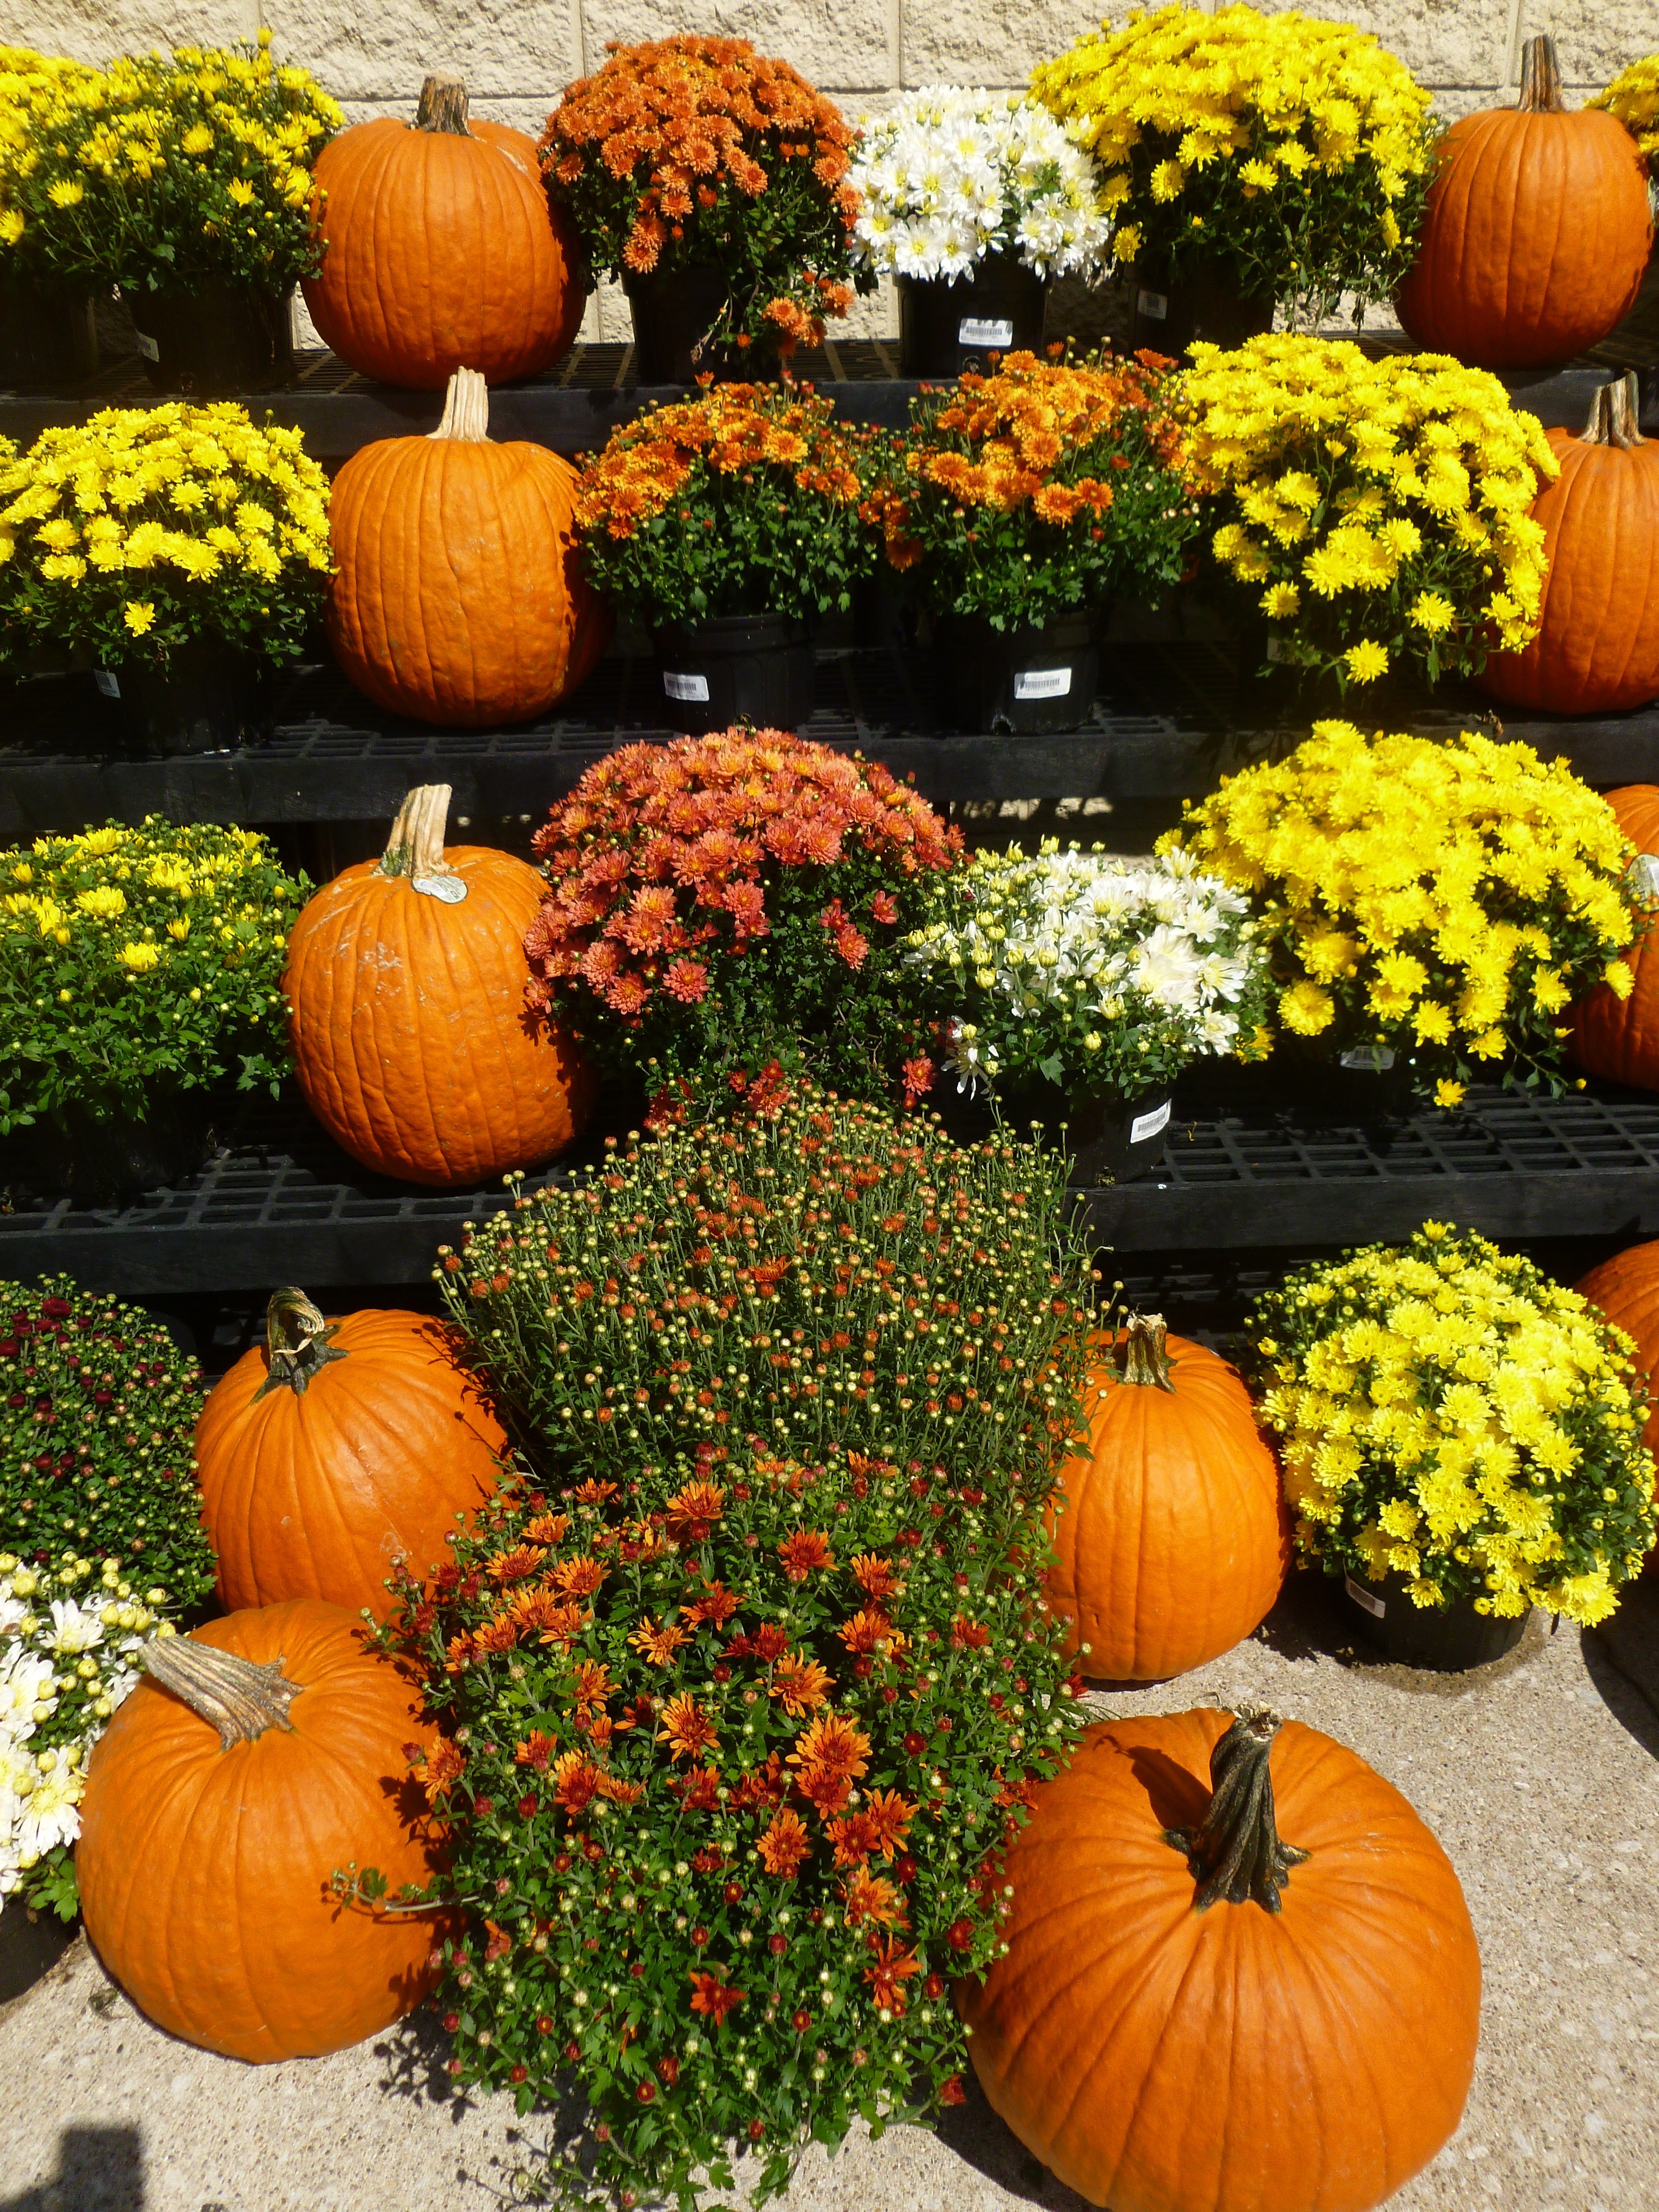 Market, Flowers, Autumn, Pumpkins, pumpkin, vegetable